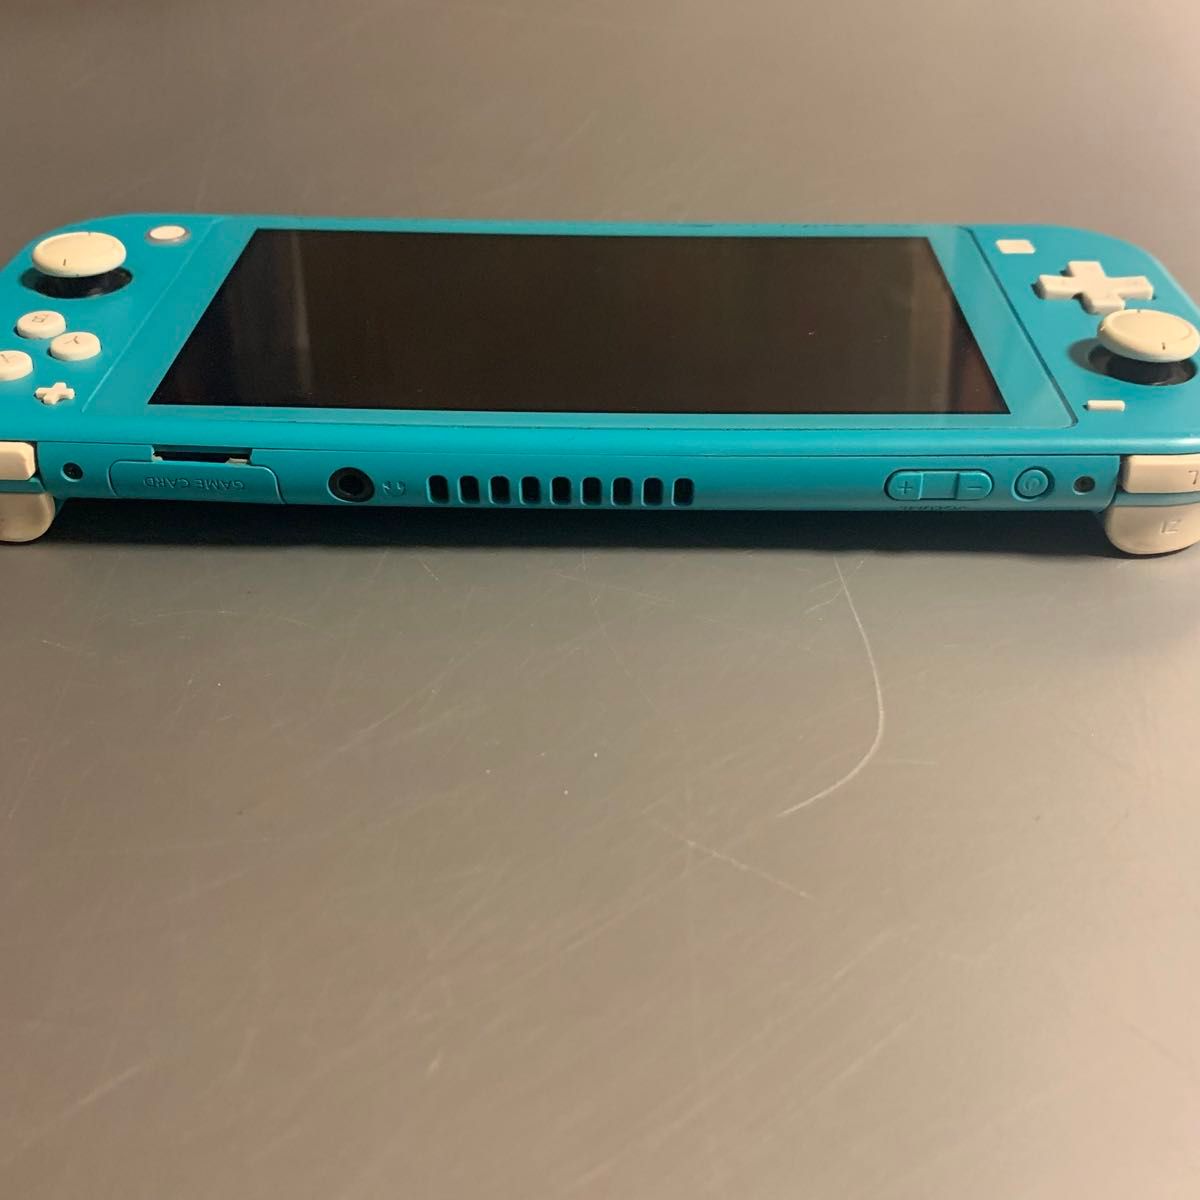 ニンテンドースイッチライト ターコイズ ブルー Nintendo Switch Lite 任天堂 初期化済